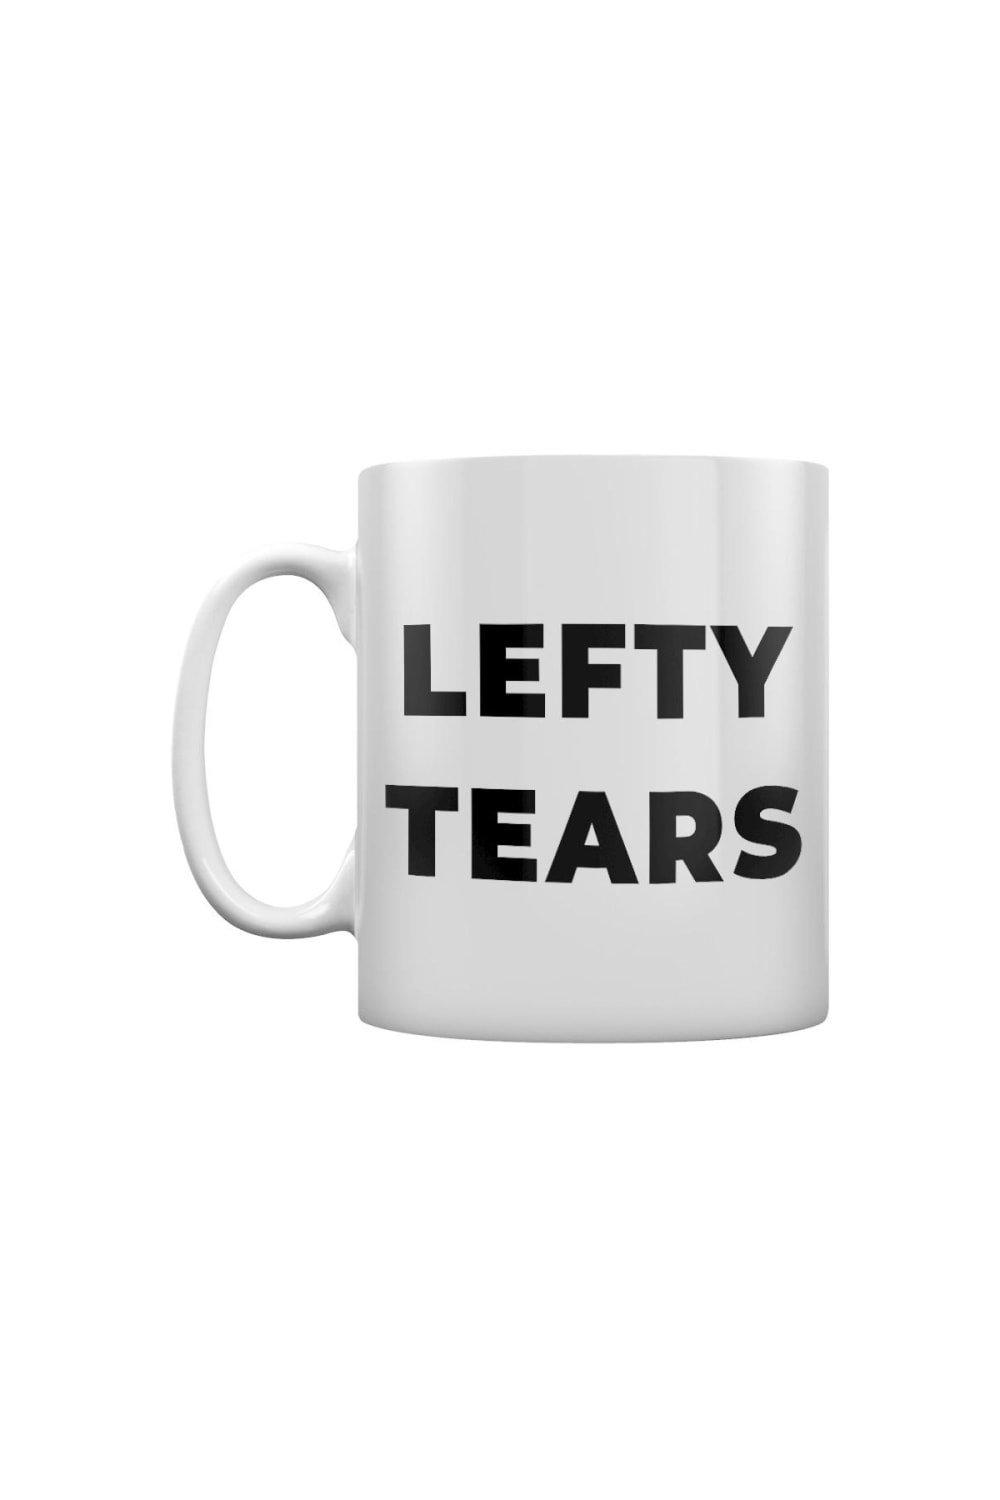 Photos - Mug / Cup Lefty Tears Mug